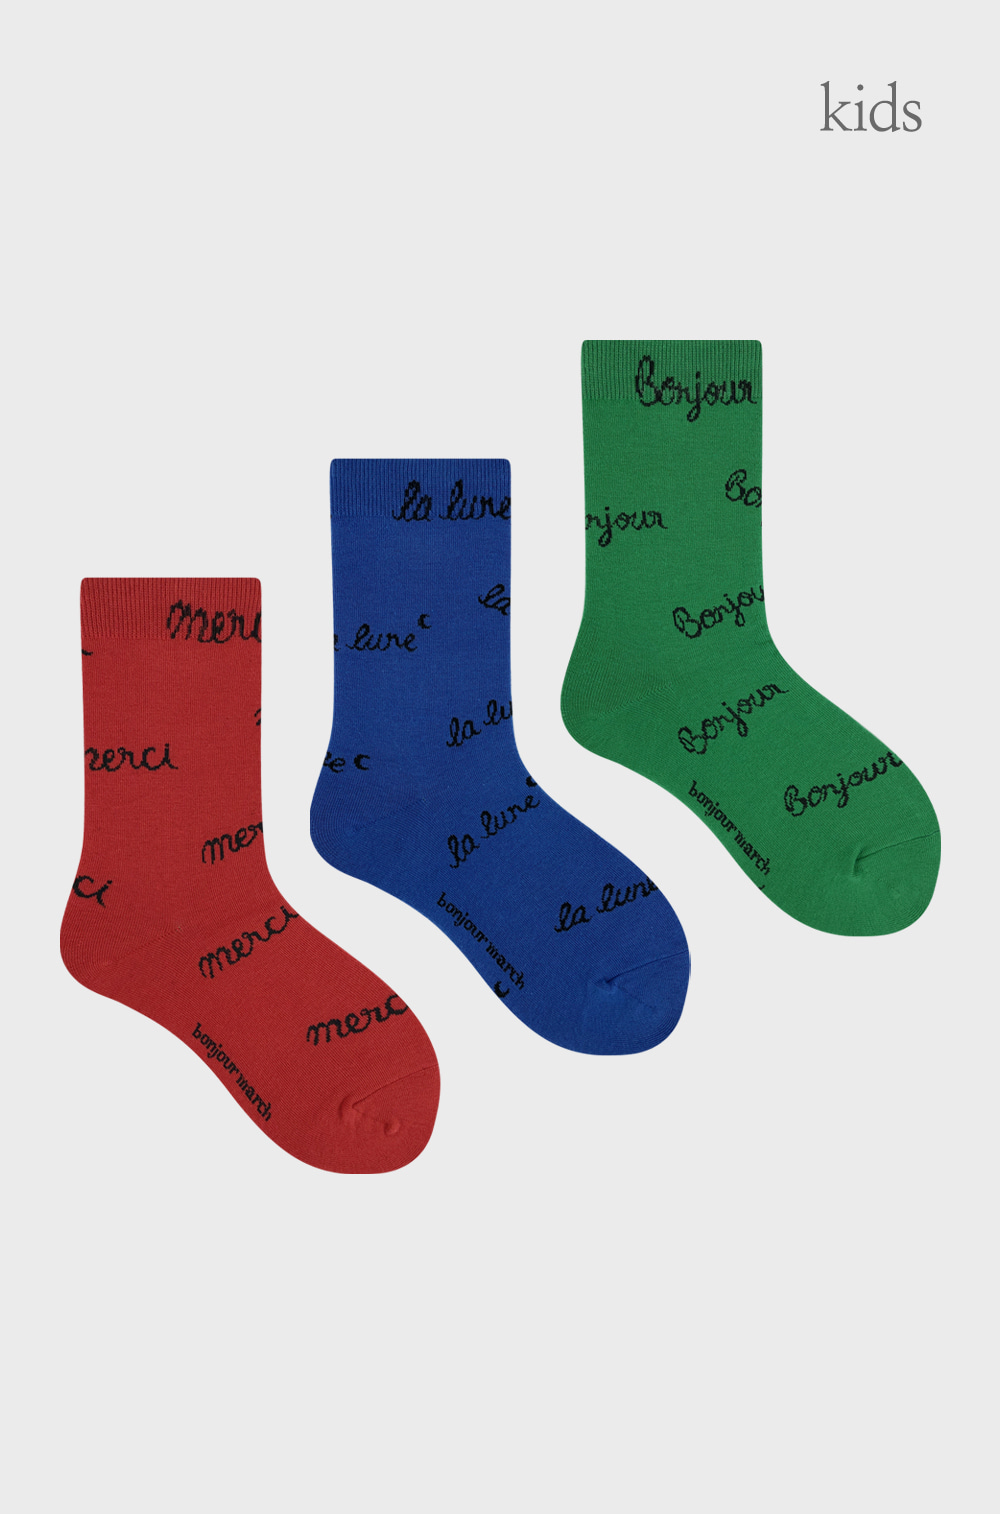 Monami socks_kids